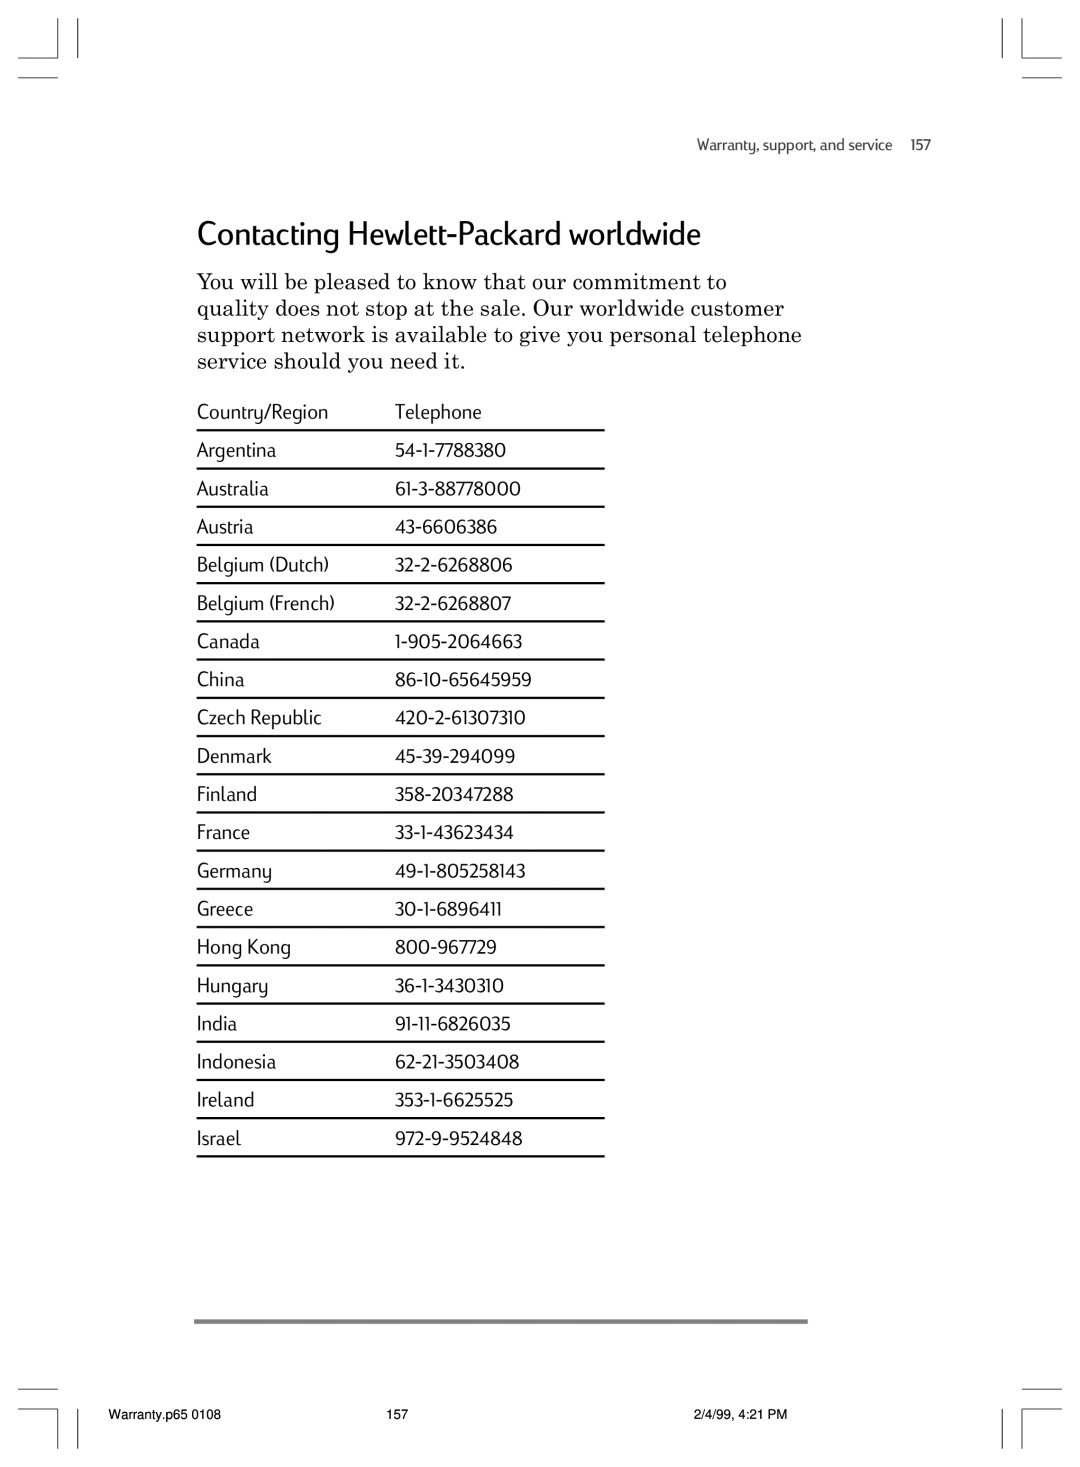 HP 820 E manual Contacting Hewlett-Packard worldwide 